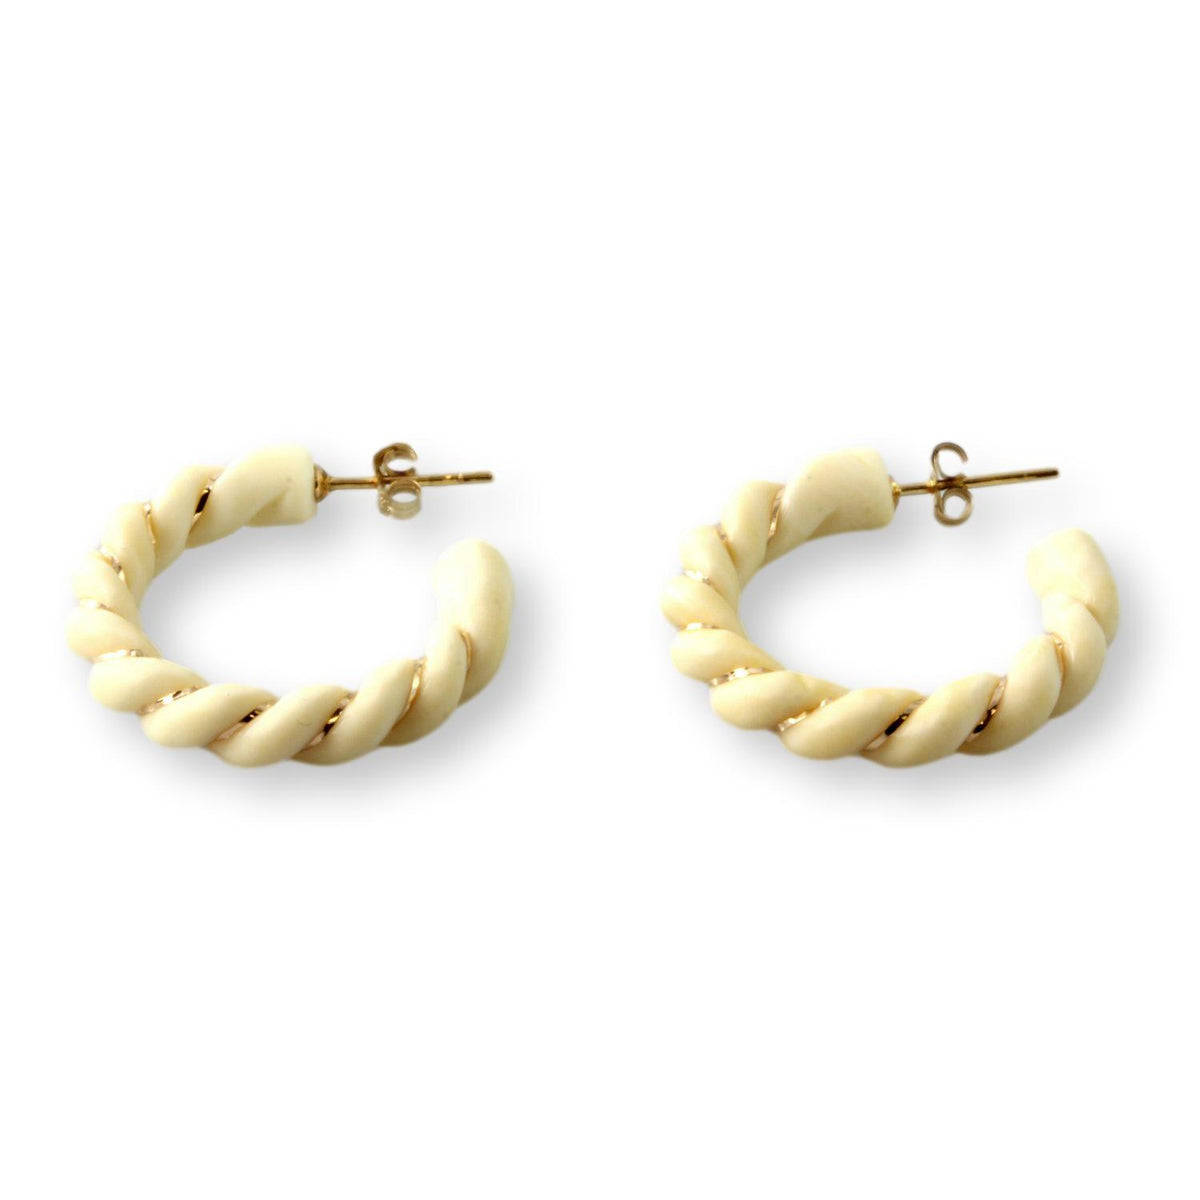 14K Gold Twist Design Carved Bone Hoop Earrings